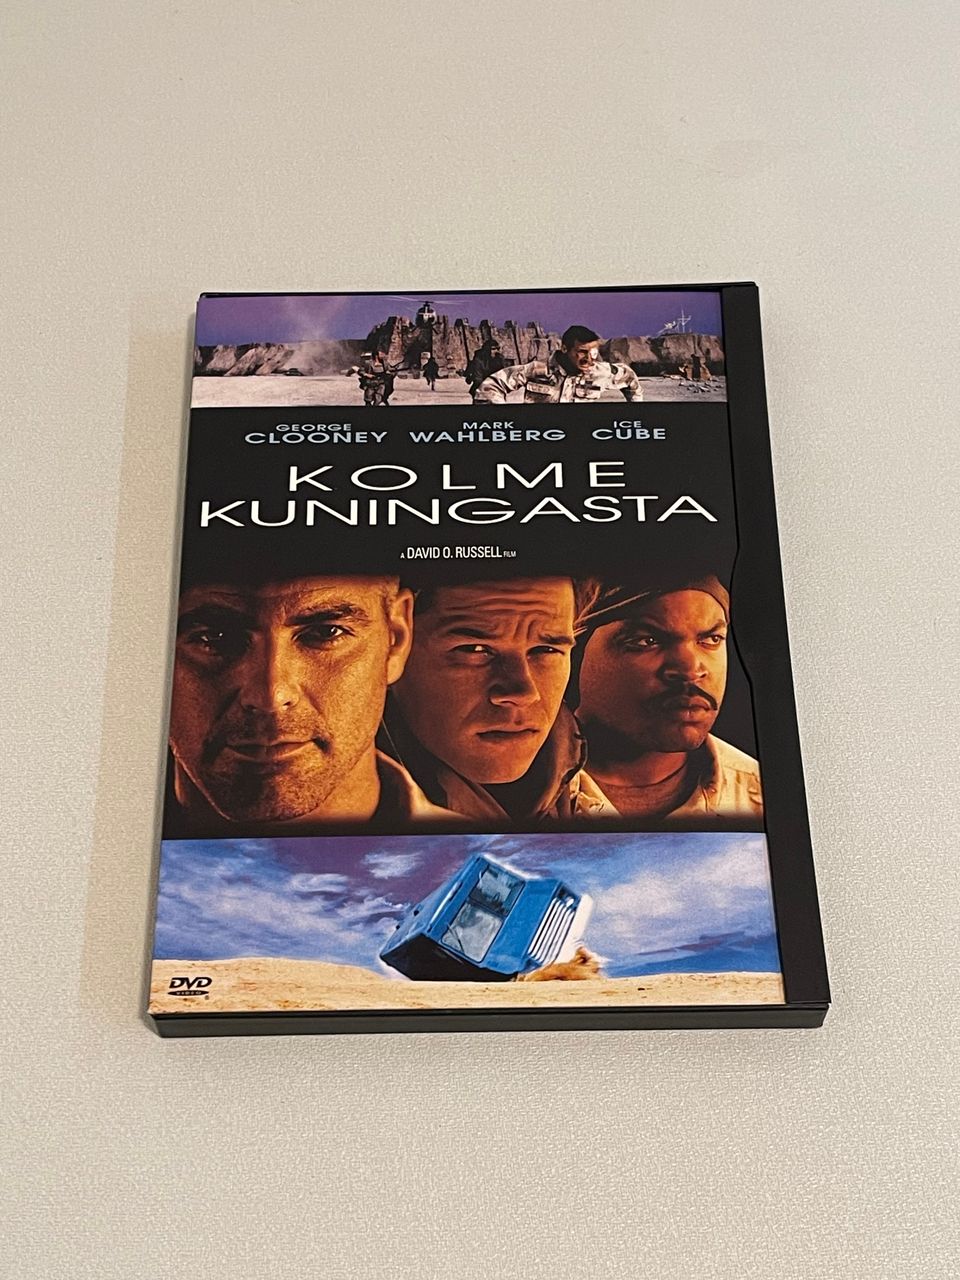 Kolme kuningasta (ensimmäinen suomi-DVD)